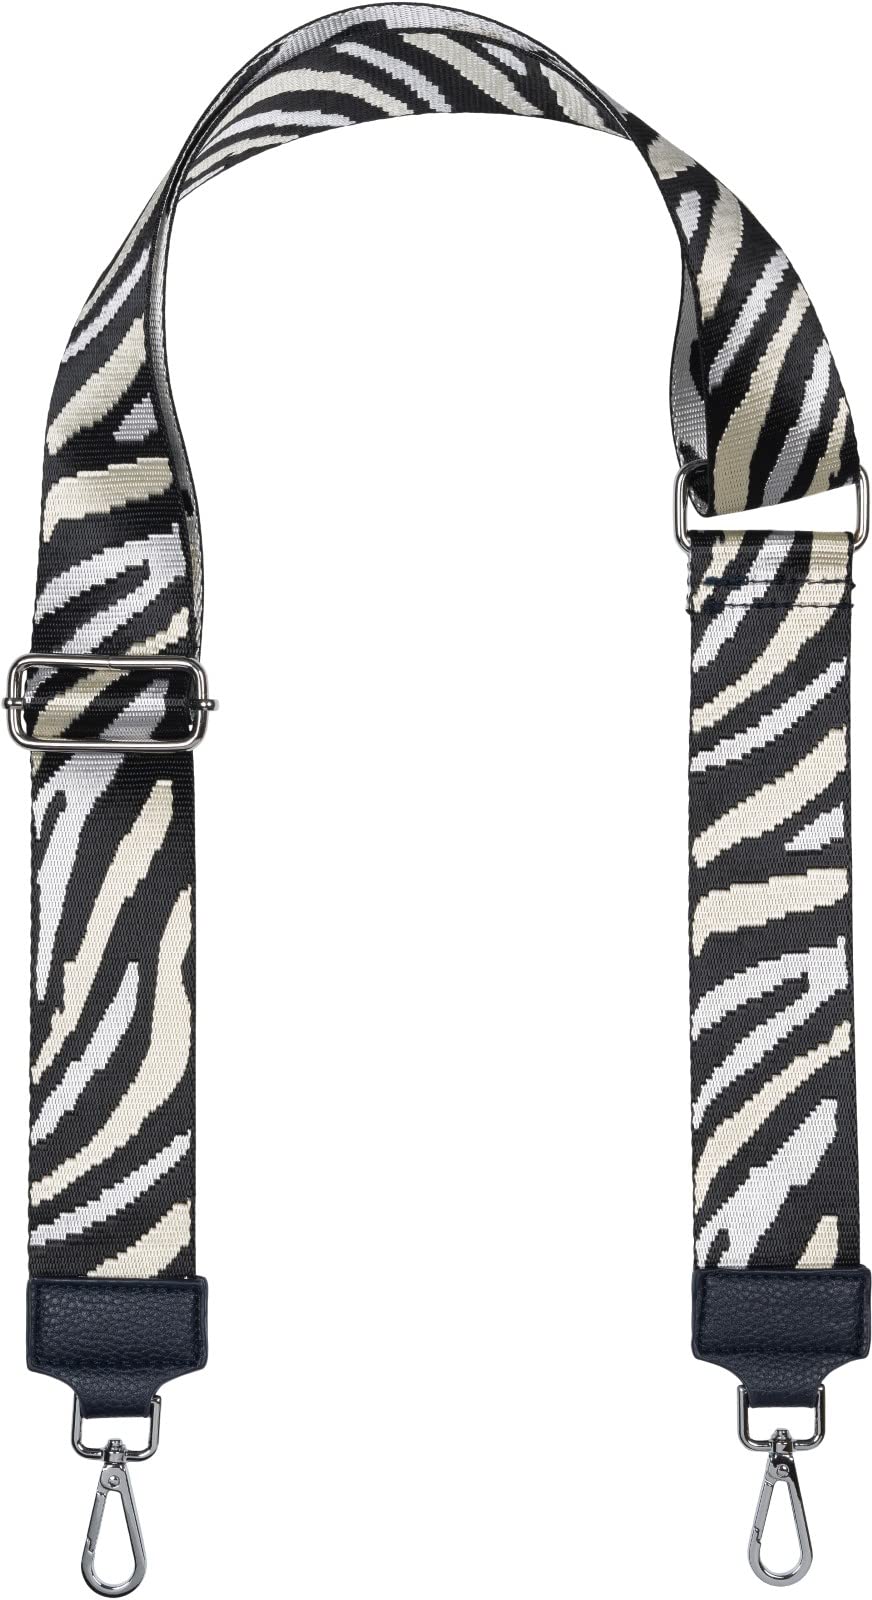 styleBREAKER Breiter Taschen Schulterriemen verstellbar mit Zebra Muster, Wechsel Taschengurt, Handyband, Handykette 02013033, Farbe:Schwarz-Weiß-Creme von styleBREAKER